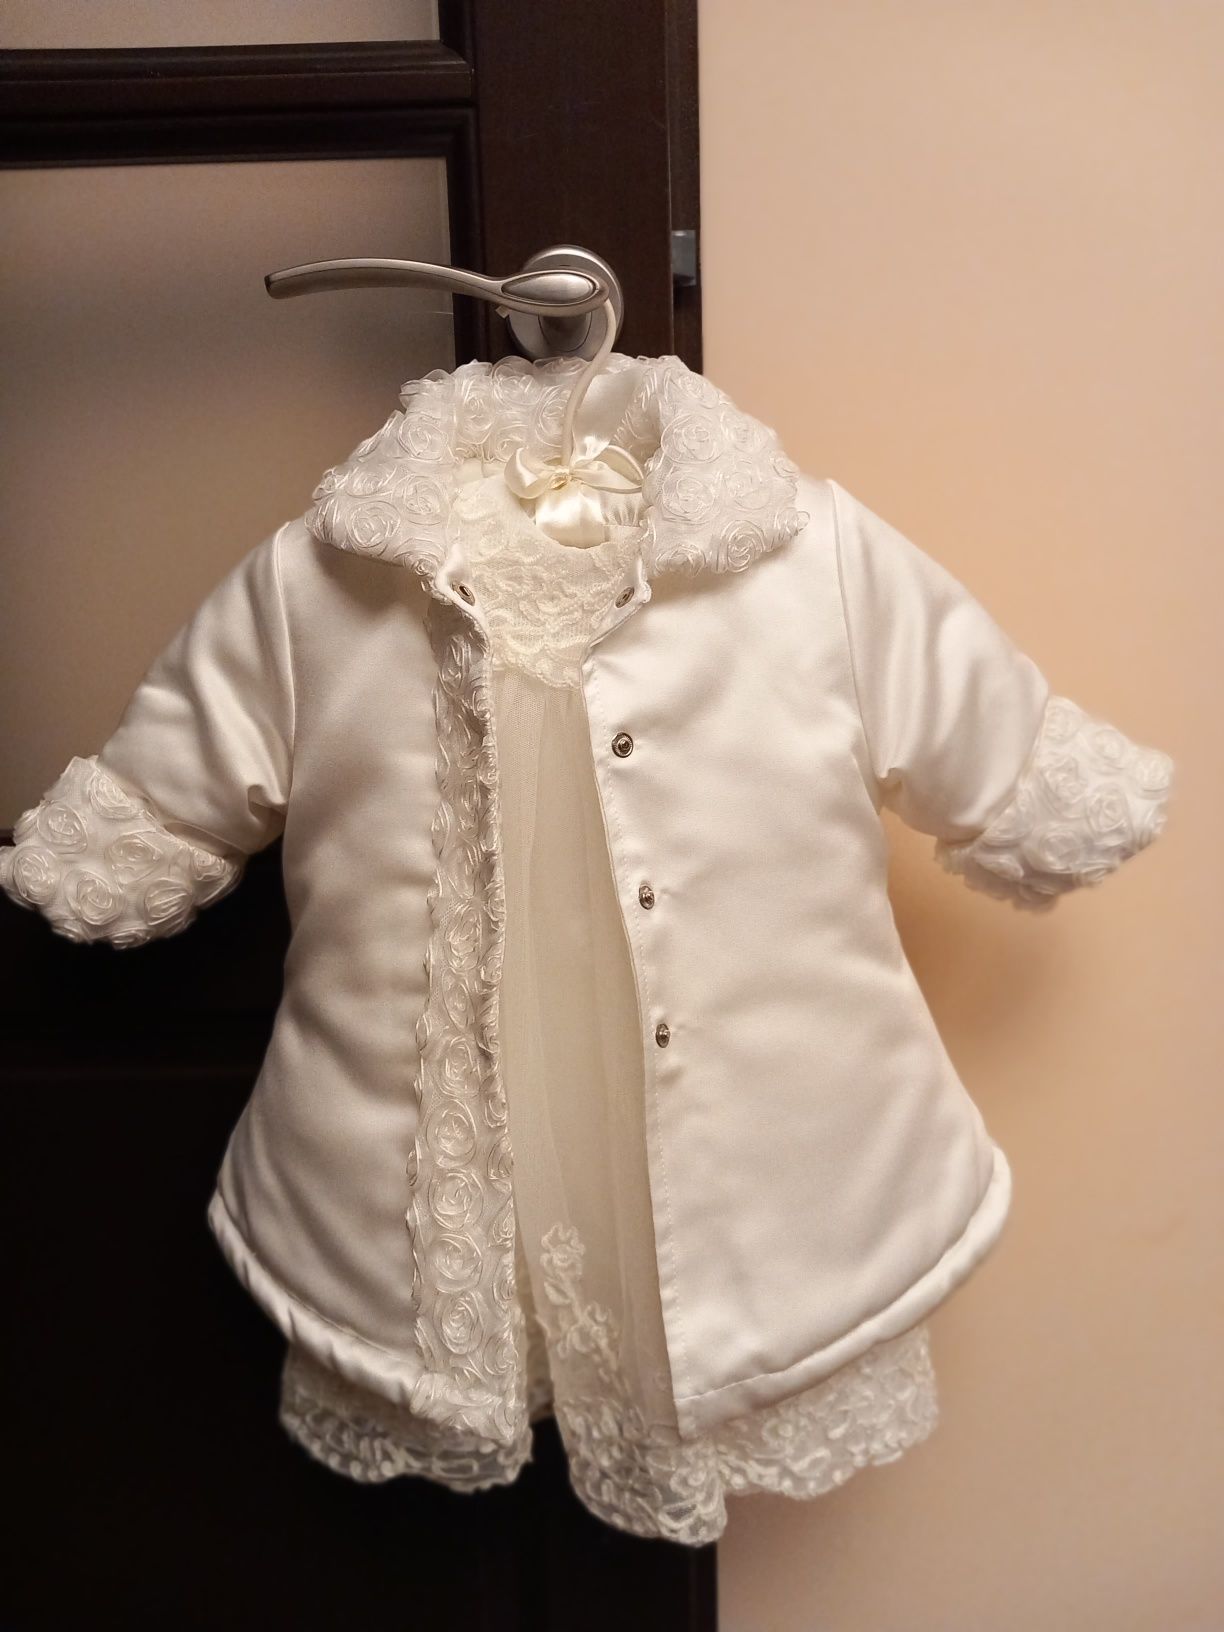 Zestaw sukienka biała 68 rozmiar + bluzka, kurtka, 2 czapki